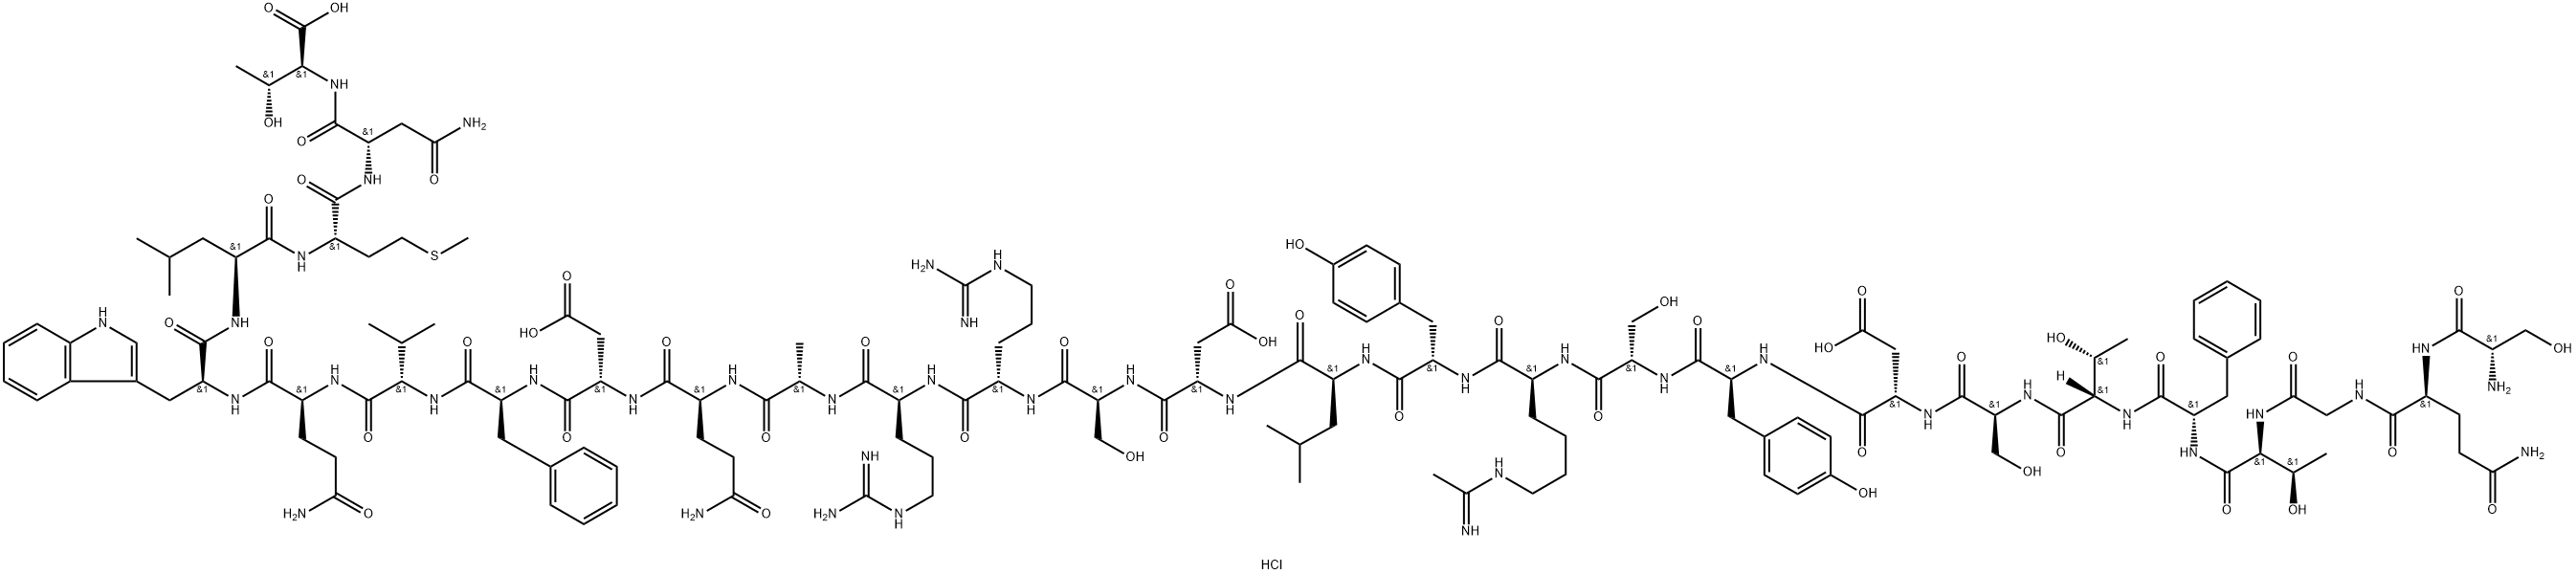 N(epsilon)-acetimidoglucagon, des-His(1)- Structure